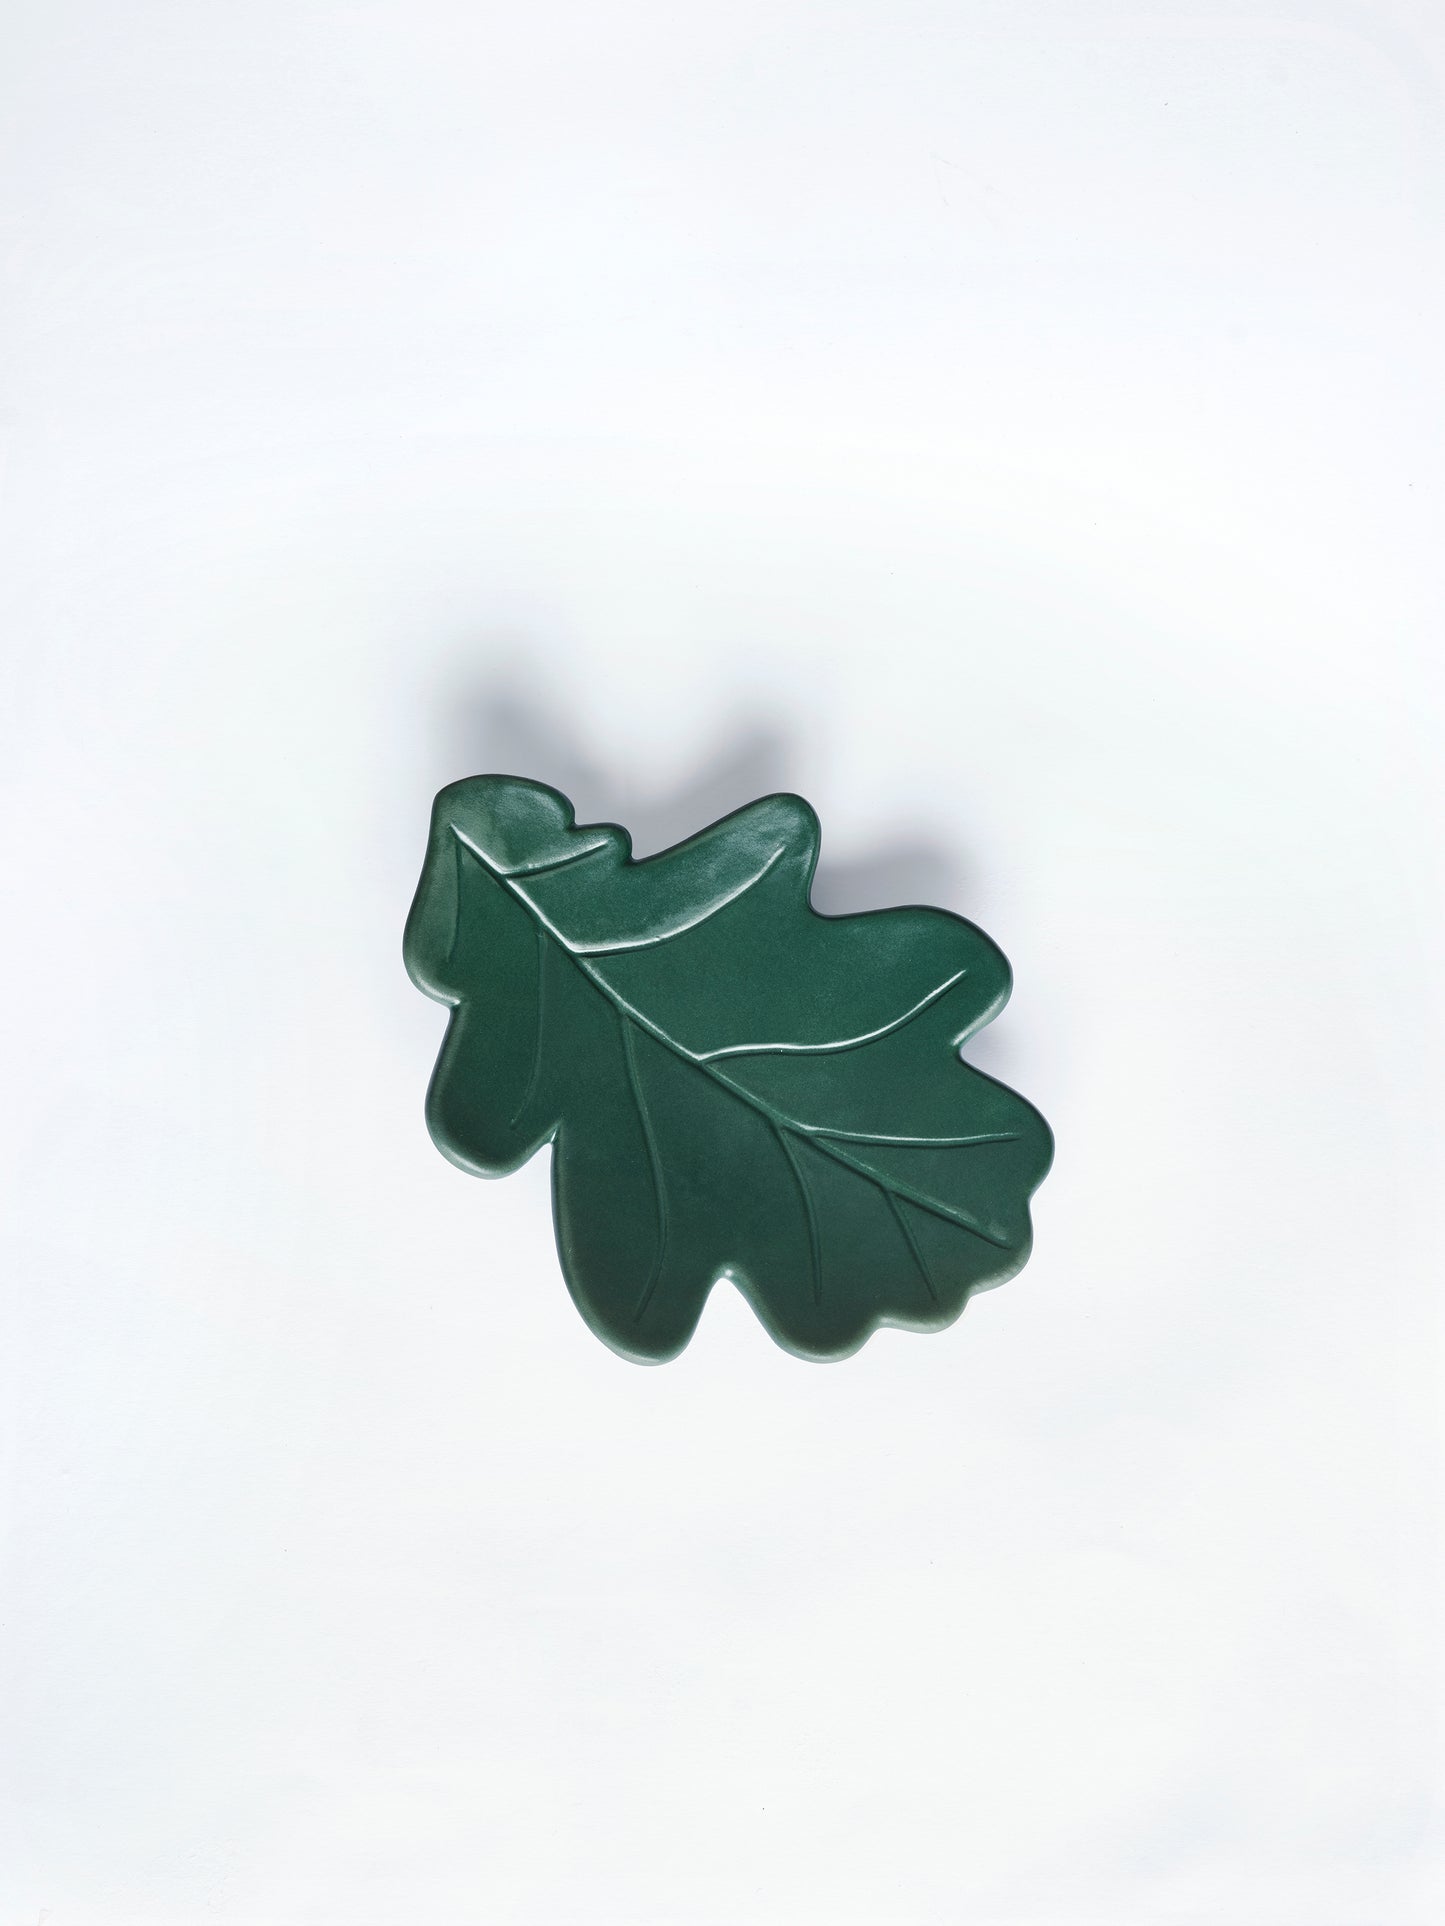 Handmade Ceramic Leaf Dish